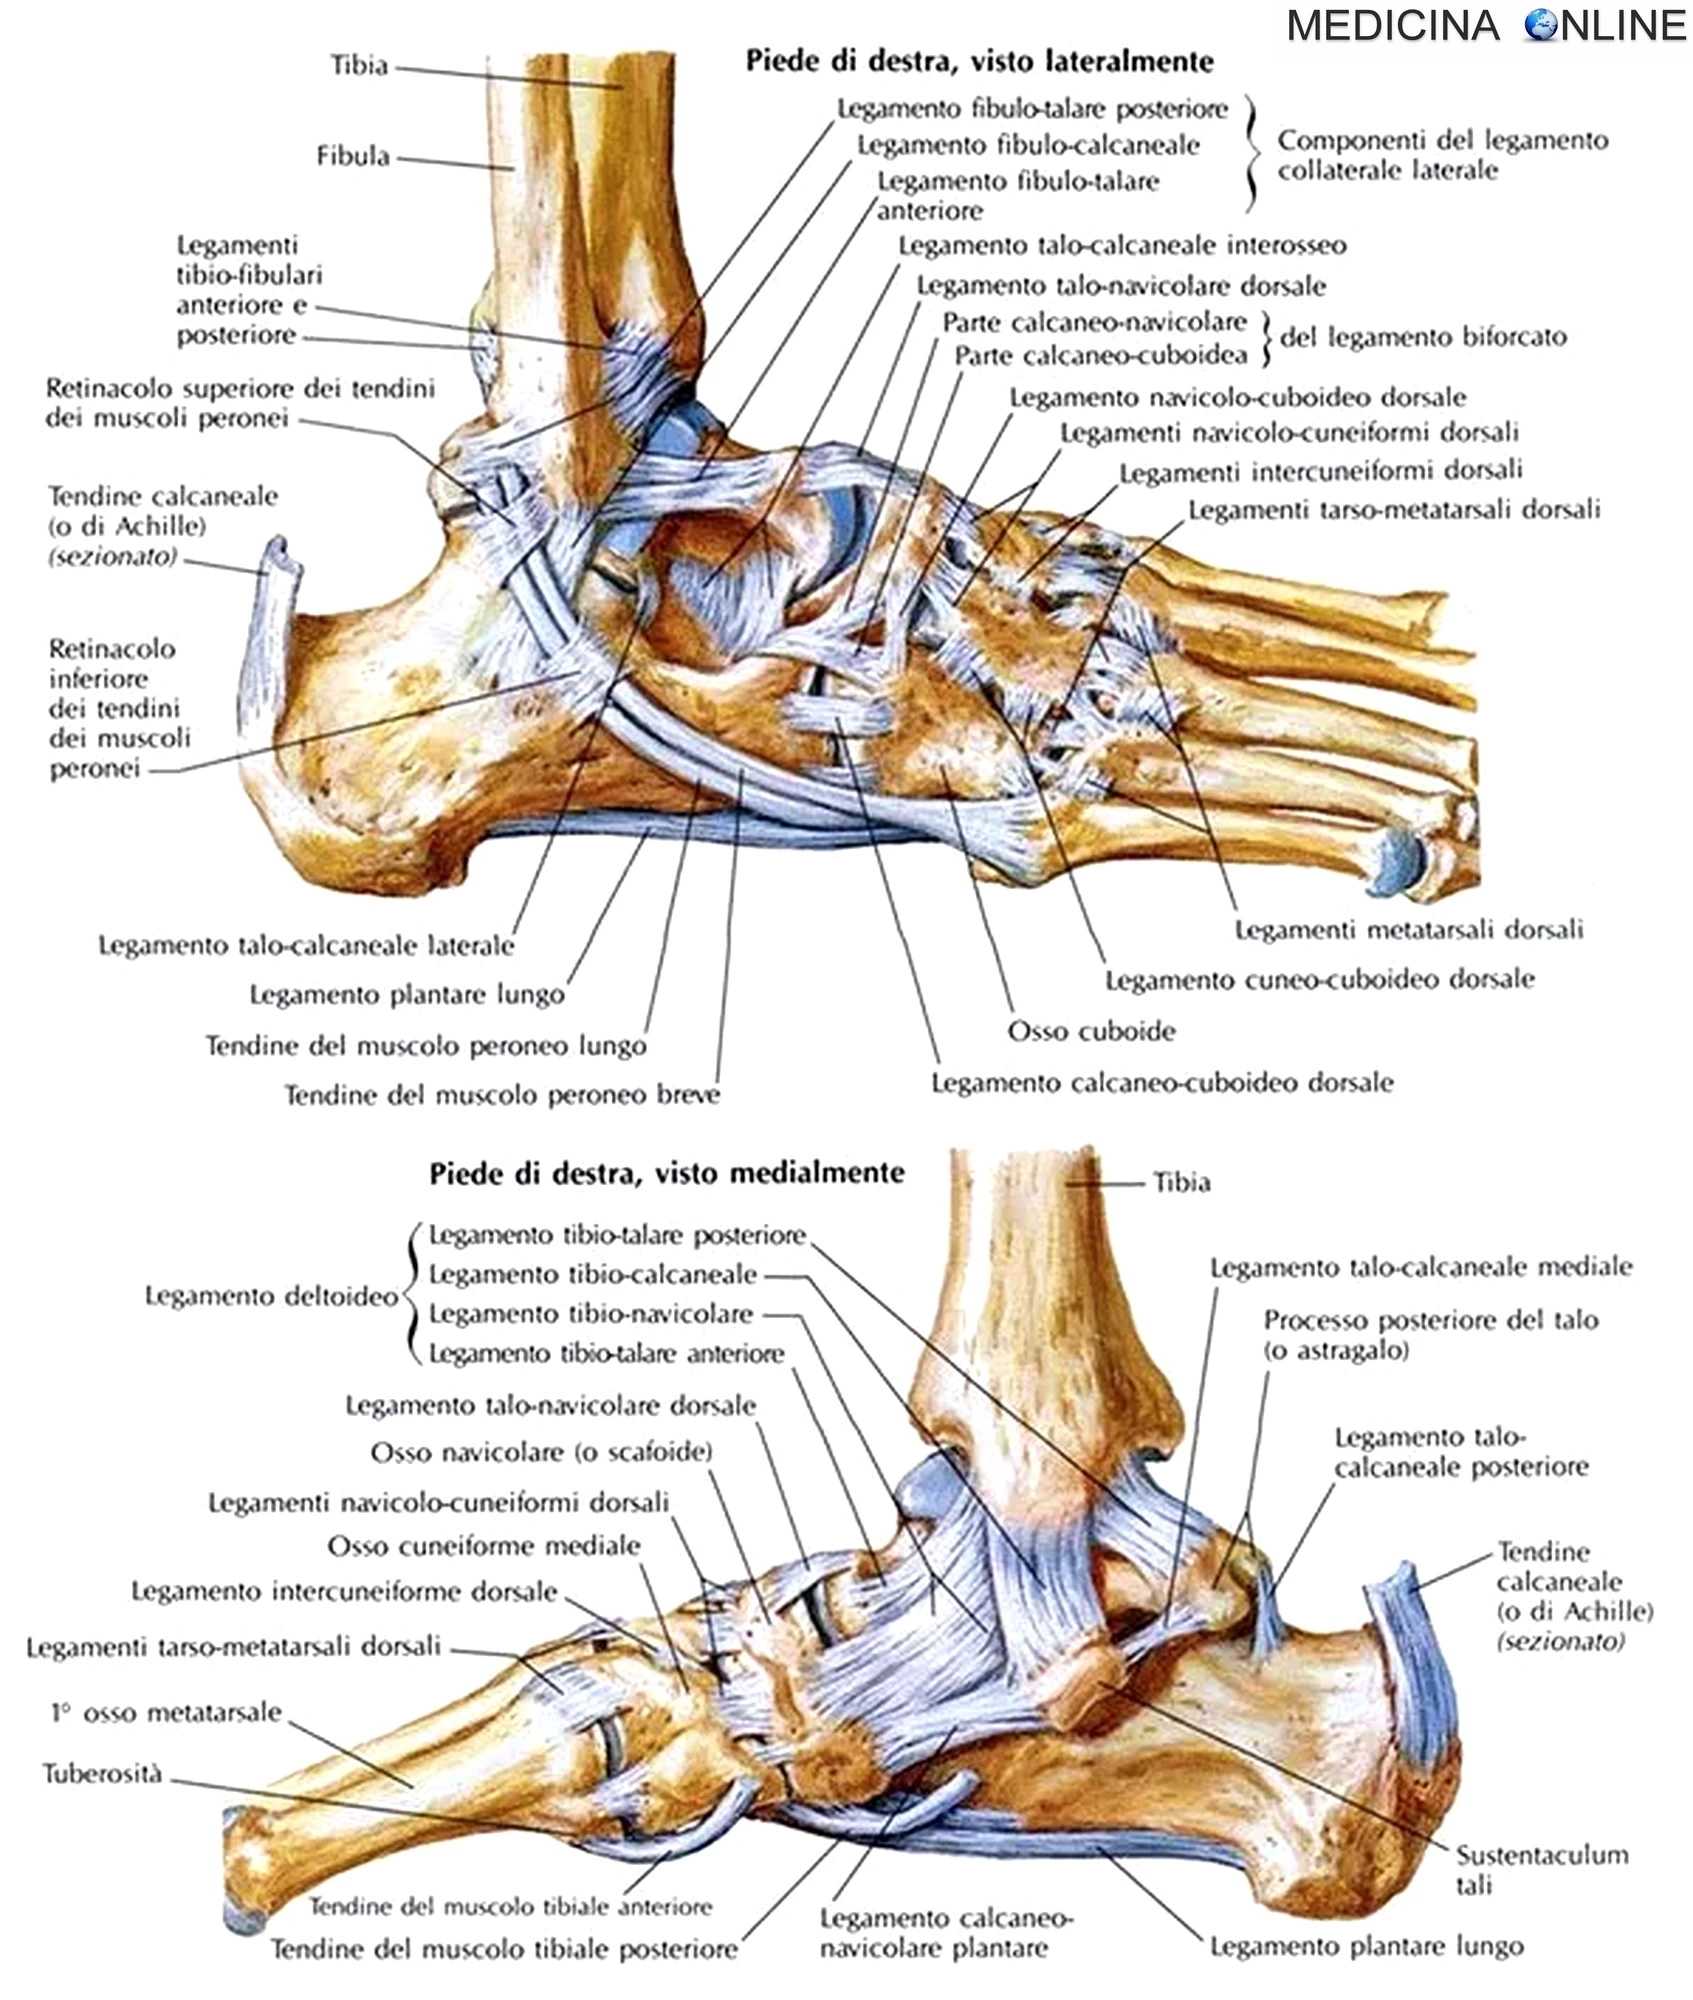 Описание голеностопного сустава. Кости и связки стопы анатомия человека. Стопа анатомия кости и суставы. Стопа анатомия строение суставы. Связки и сухожилия голеностопного сустава анатомия.